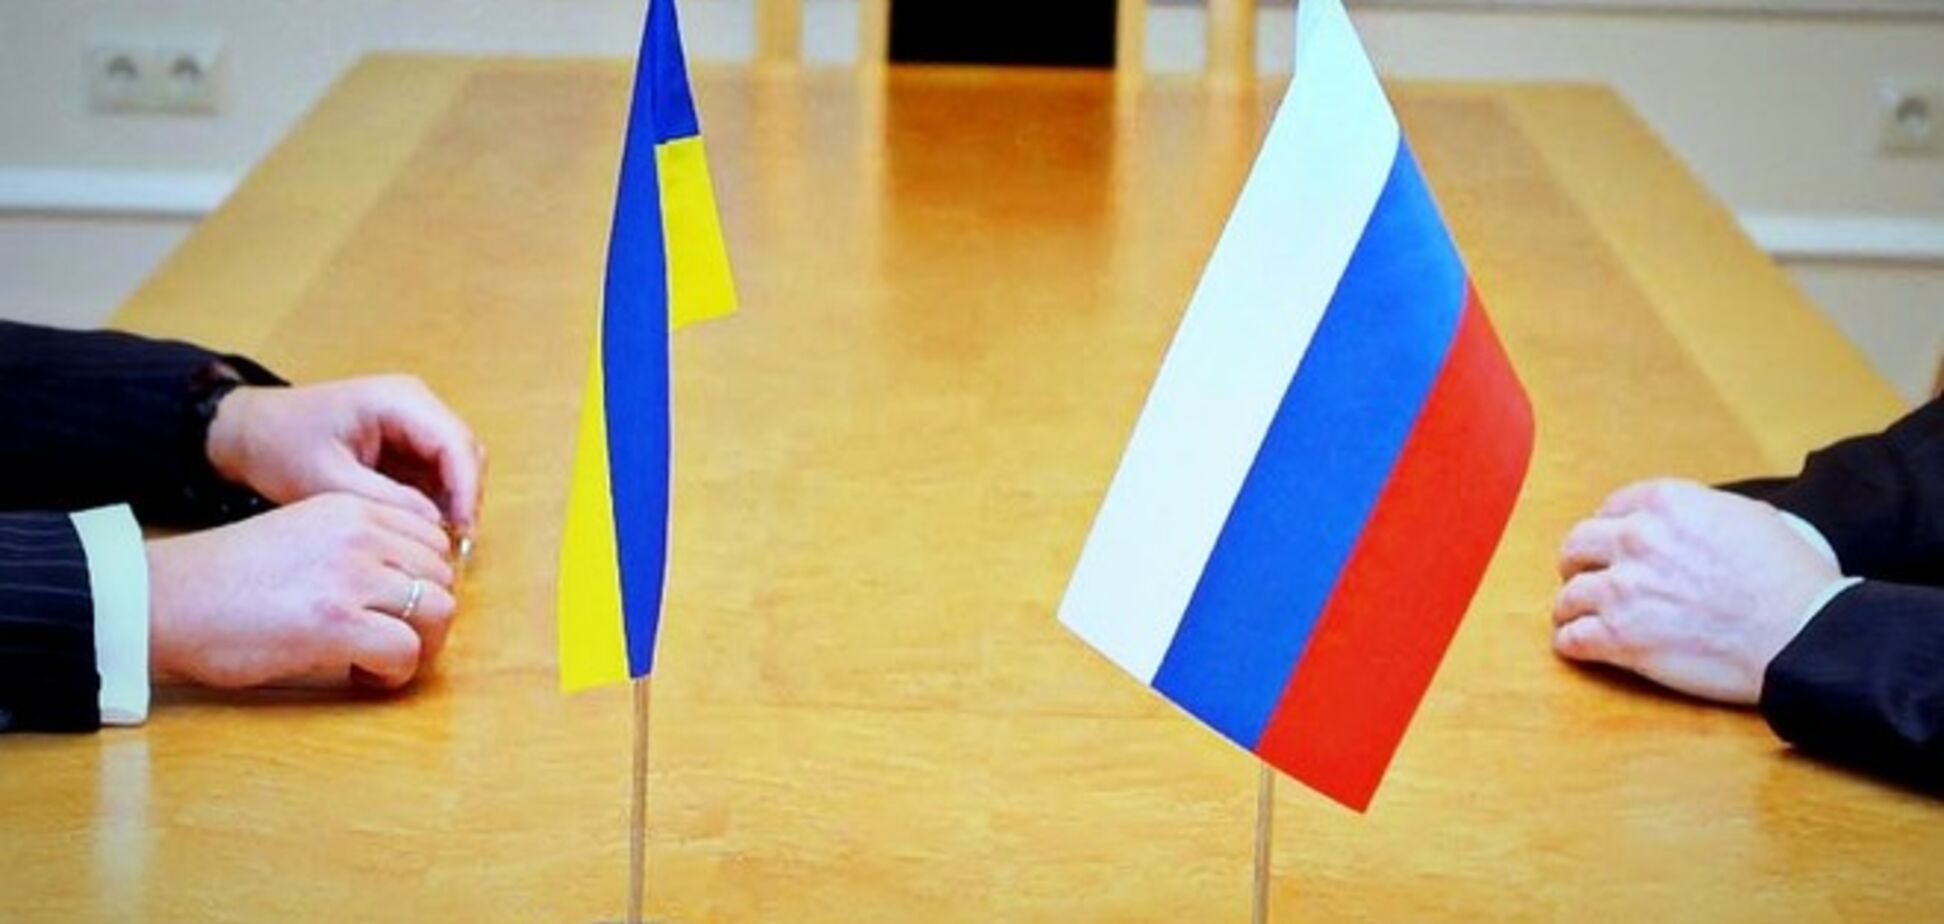 Дещица: Украина вправе провести одностороннюю демаркацию границы с РФ